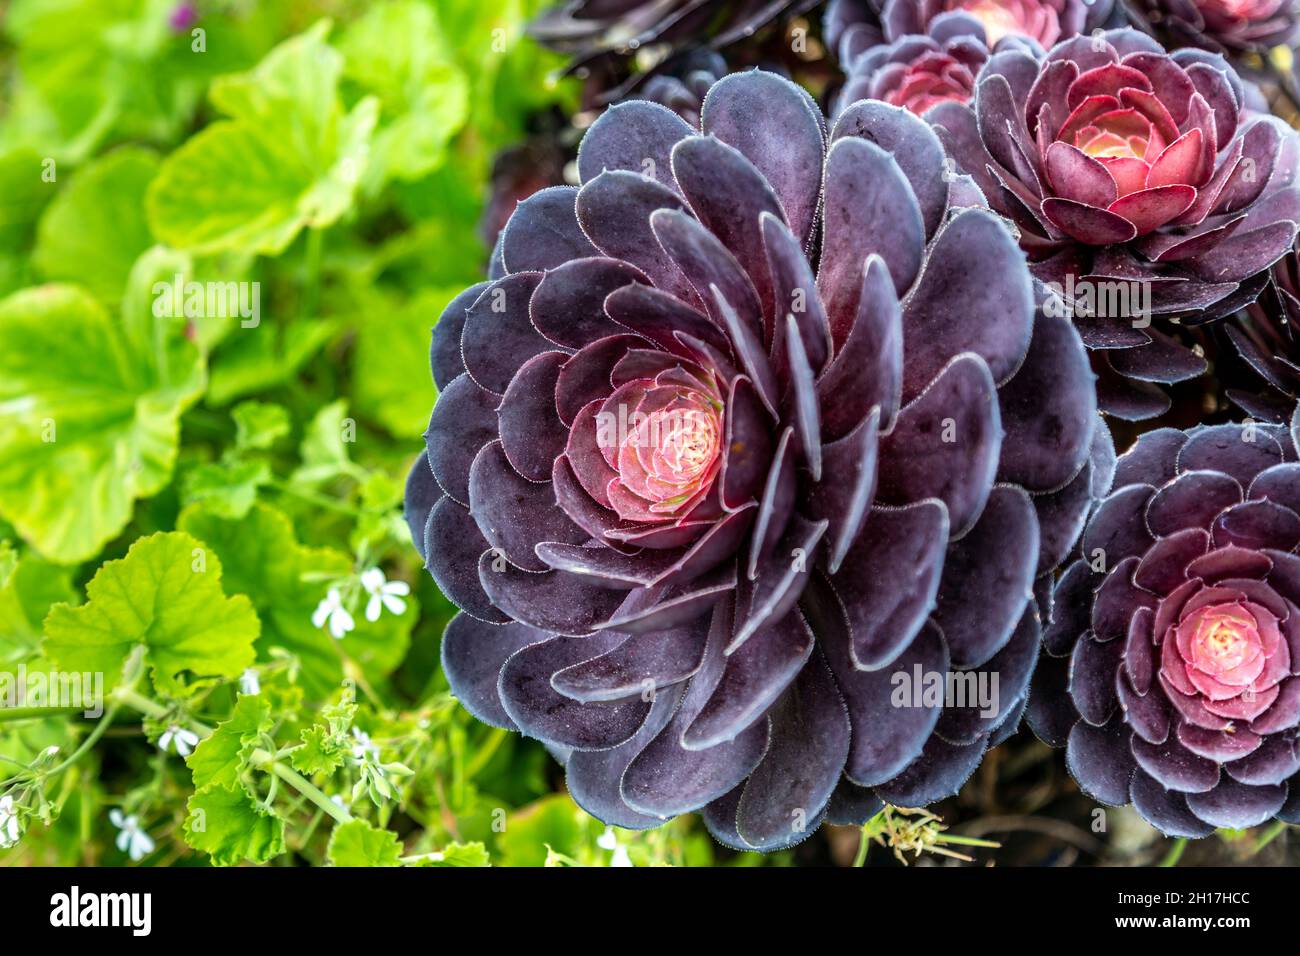 Black tree aeonium (Aeonium arboreum Zwartkop) flower close-up (Minack Theatre, Cornwall, UK) Stock Photo